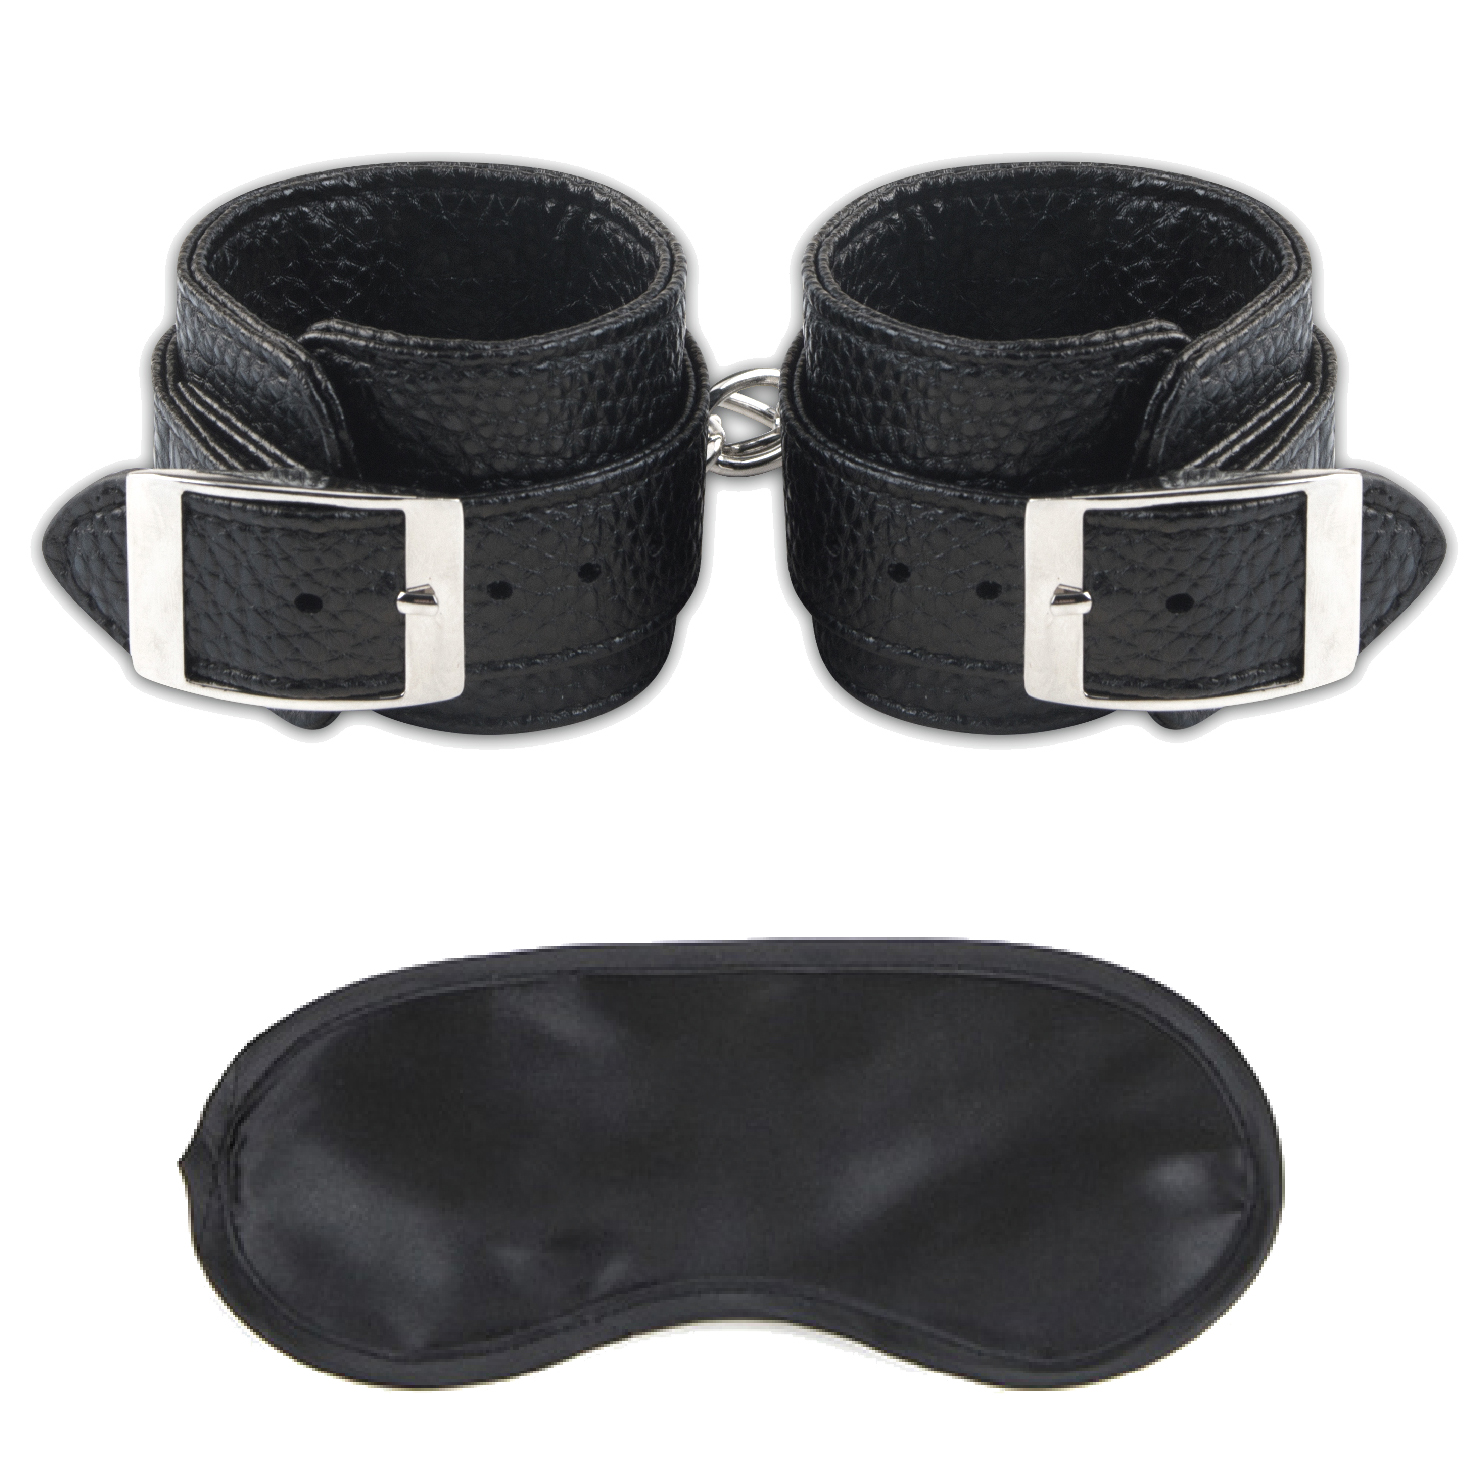 LUX FETISH Unisex Leatherette Cuffs - schwere Qualität